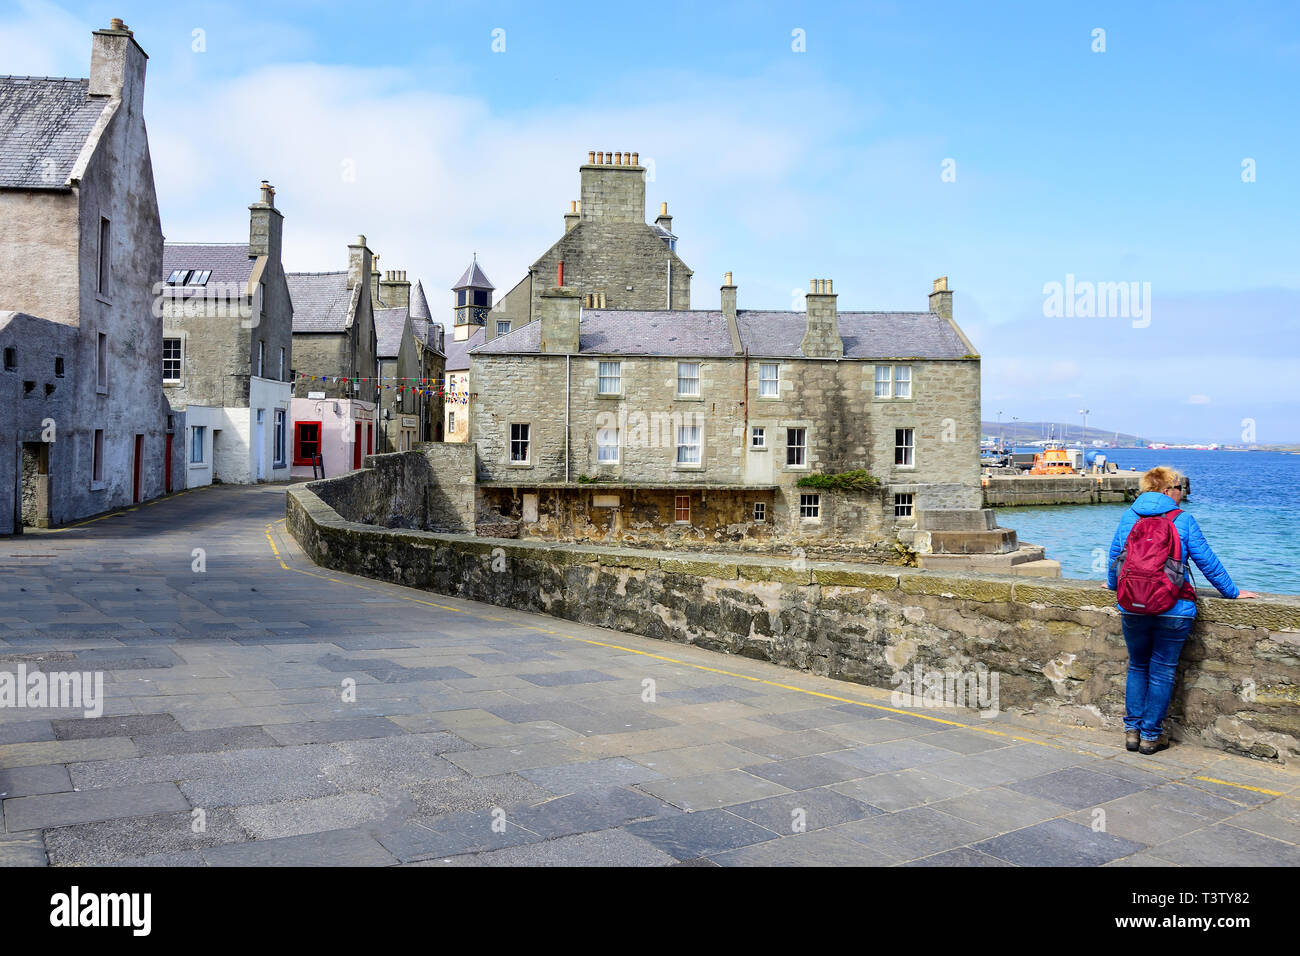 Commercial Street, (mit Jimmy Perez Ferienhaus in TV Shetland-Serie), Lerwick, Shetland, Nördliche Inseln, Schottland, Vereinigtes Königreich Stockfoto